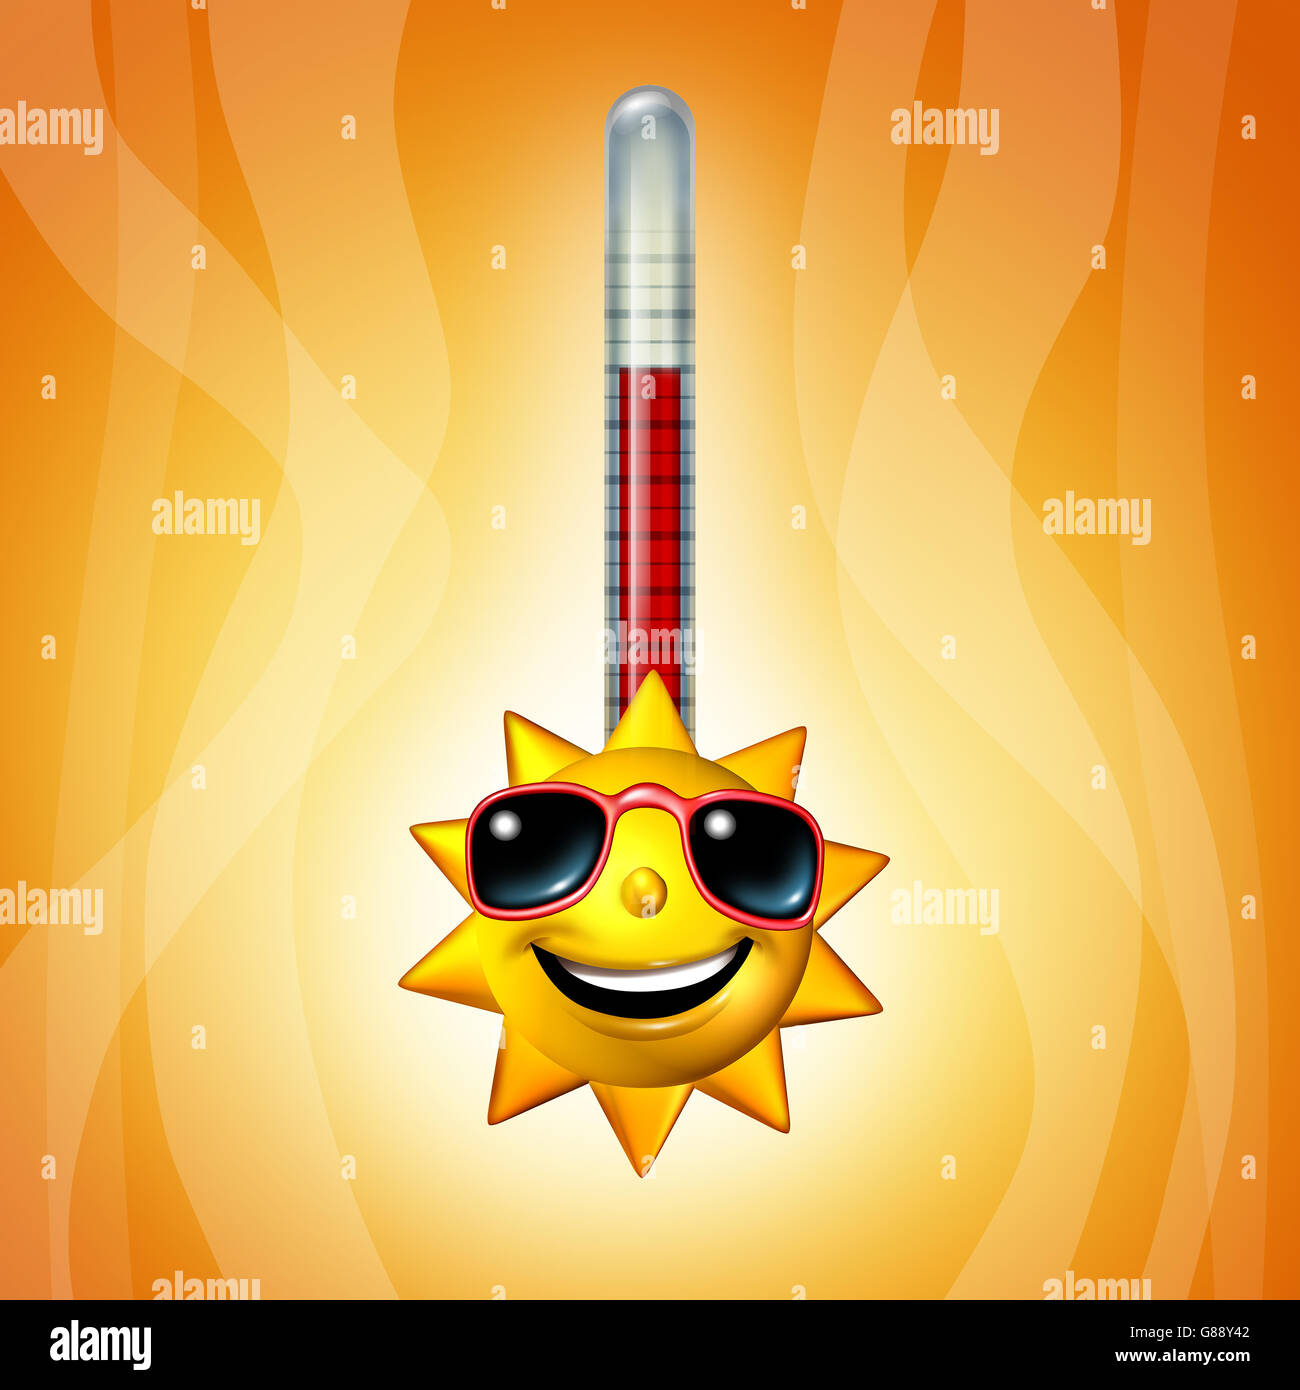 Le soleil chaud température thermomètre comme une vague de chaleur comme un personnage jaune qui représente l'extrême de rupture record de temps chaud en été, symbole comme un 3D illustration. Banque D'Images